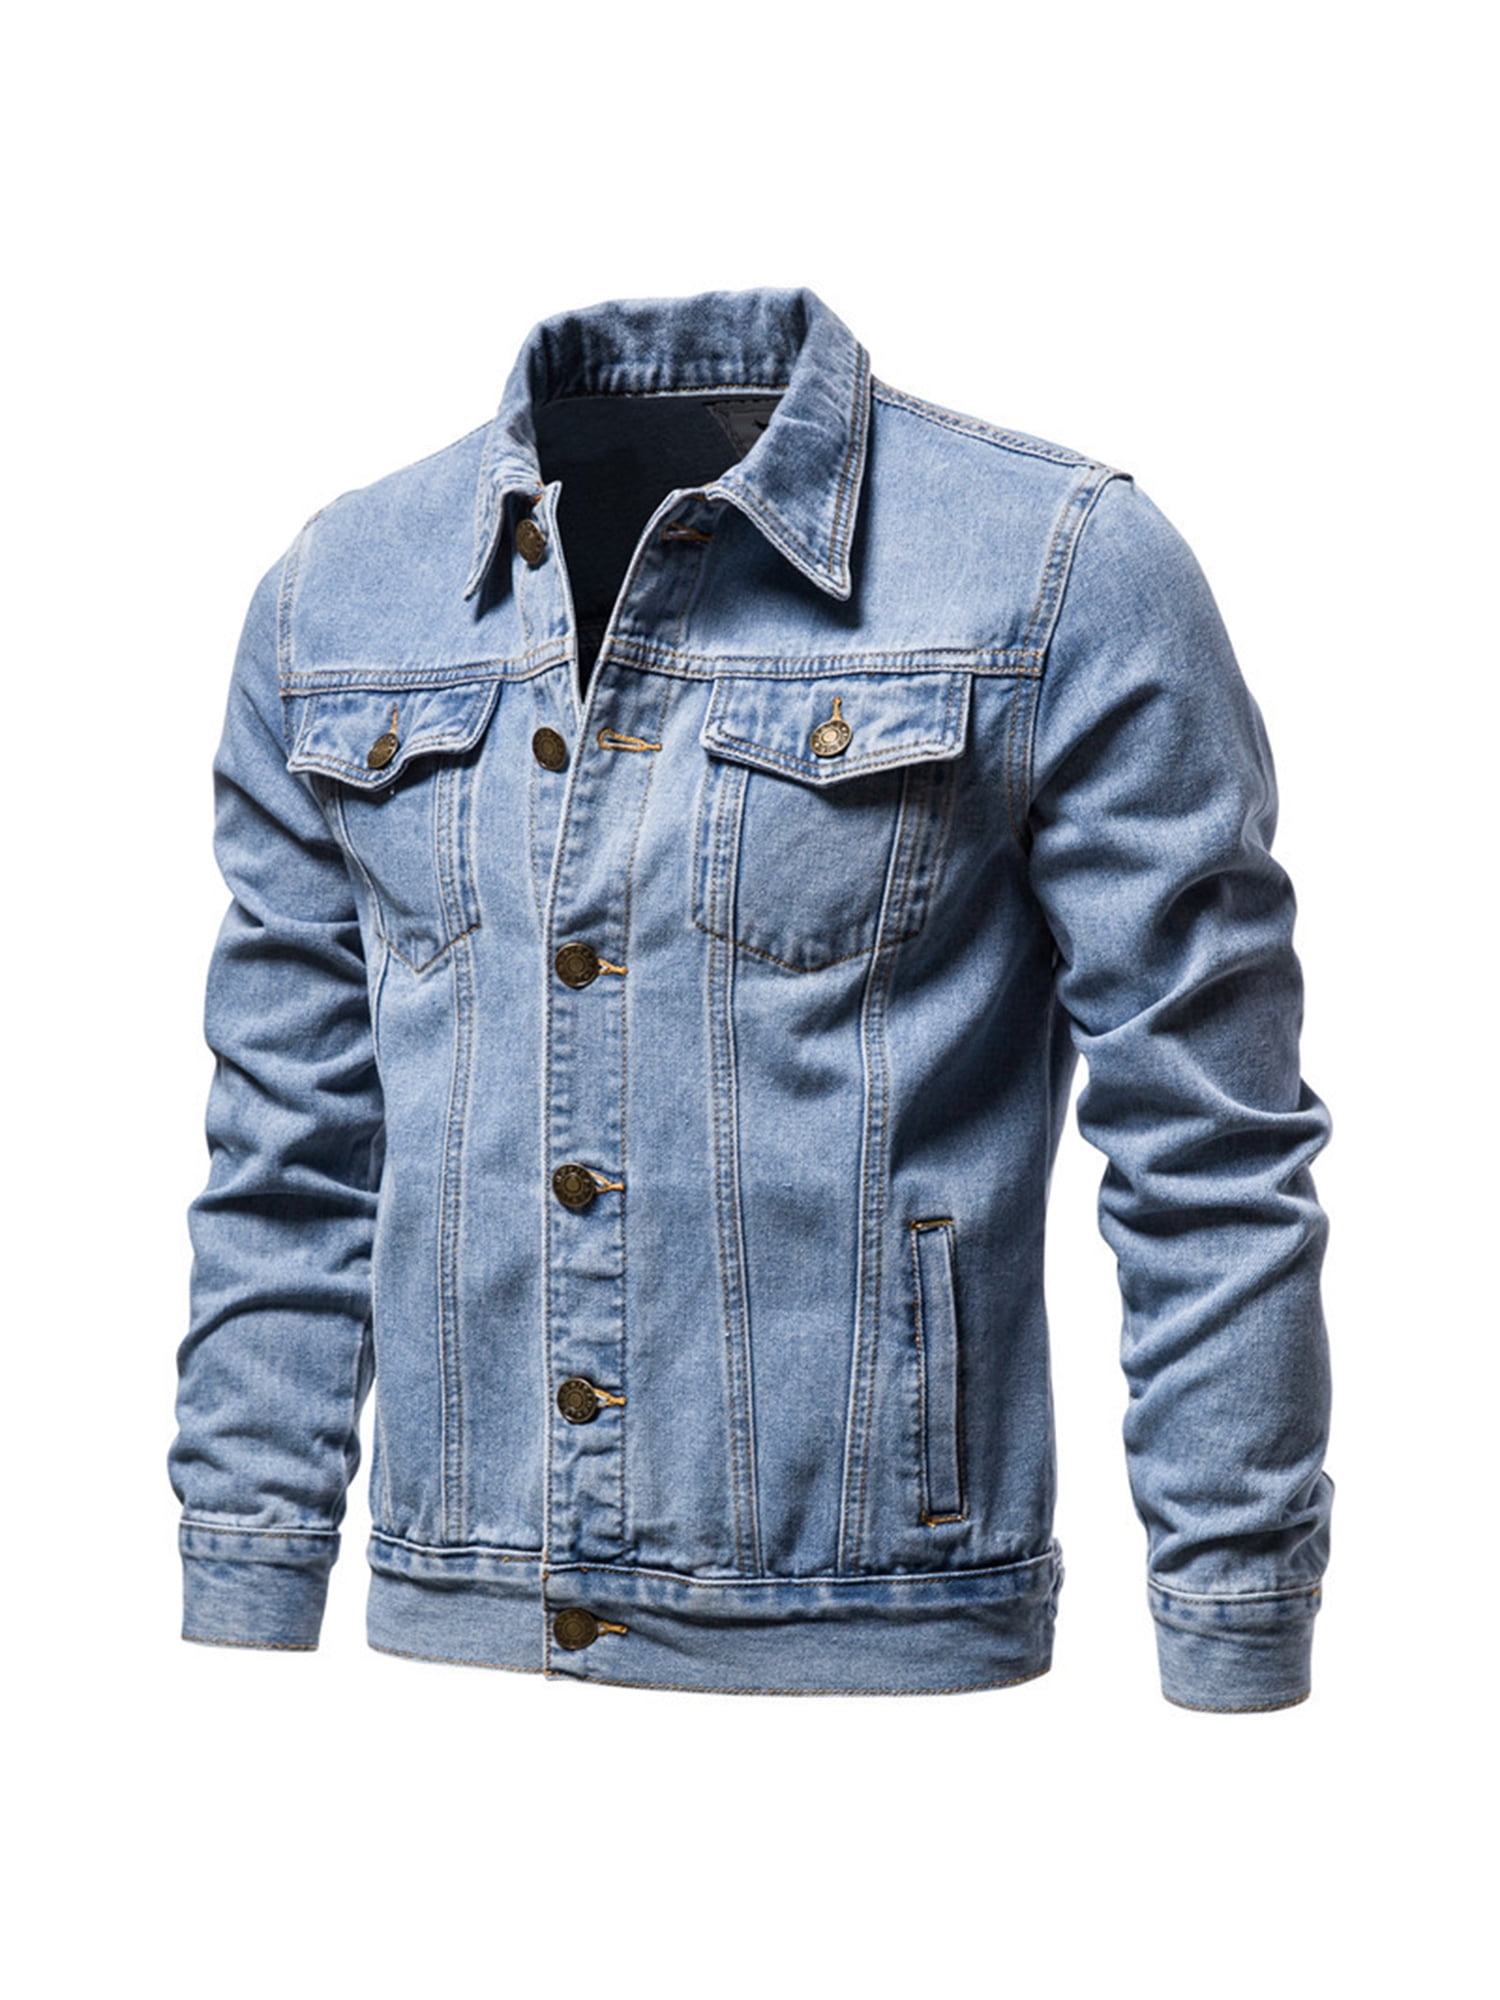 Buy Highlander Light Blue Denim Jacket for Men Online at Rs.889 - Ketch